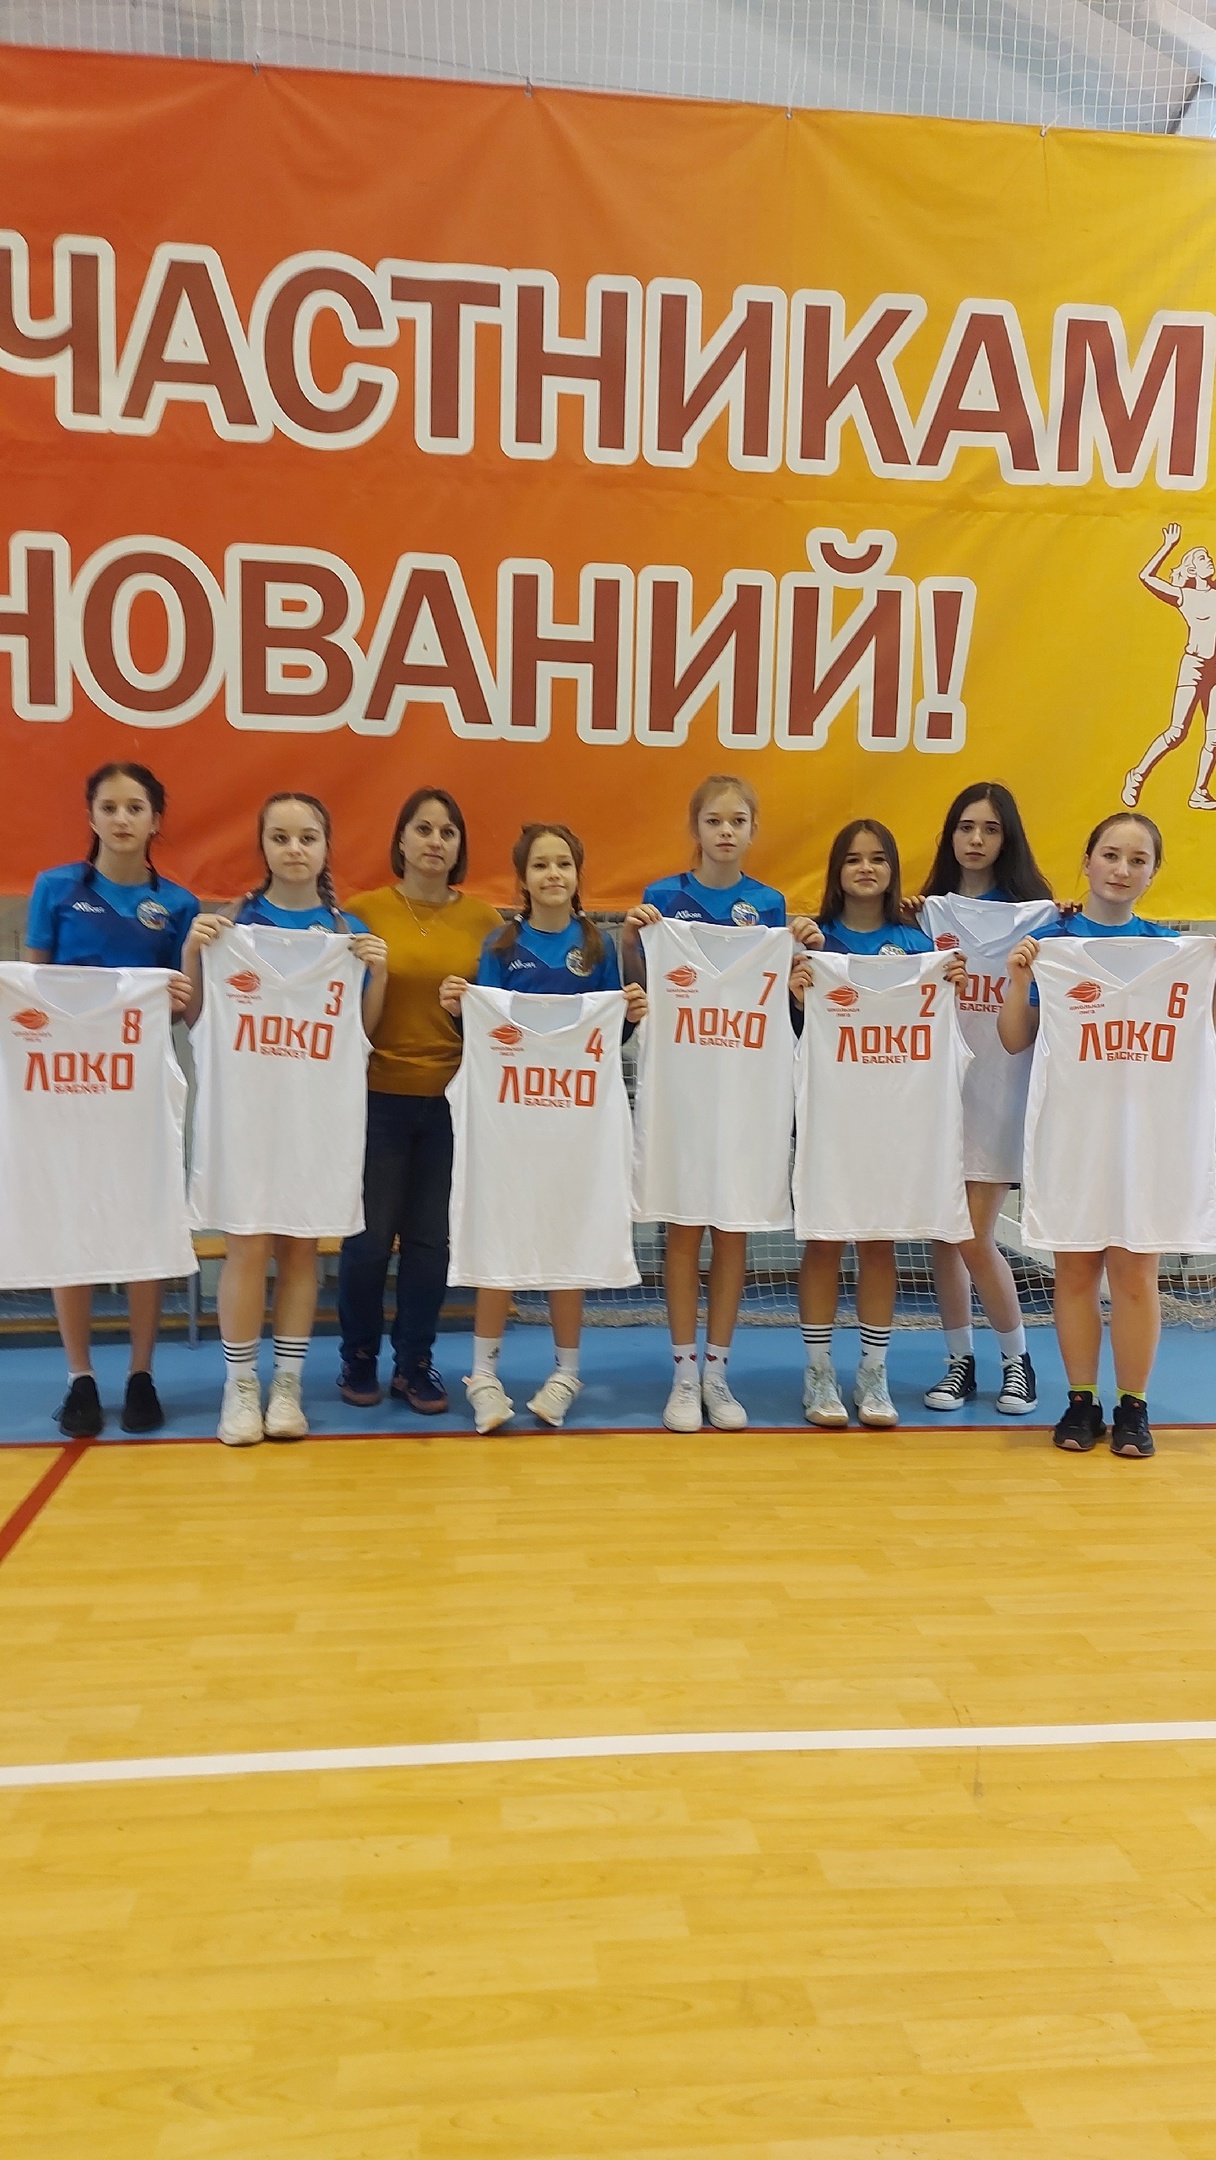 Всероссийский чемпионат по баскетболу среди школьных команд.